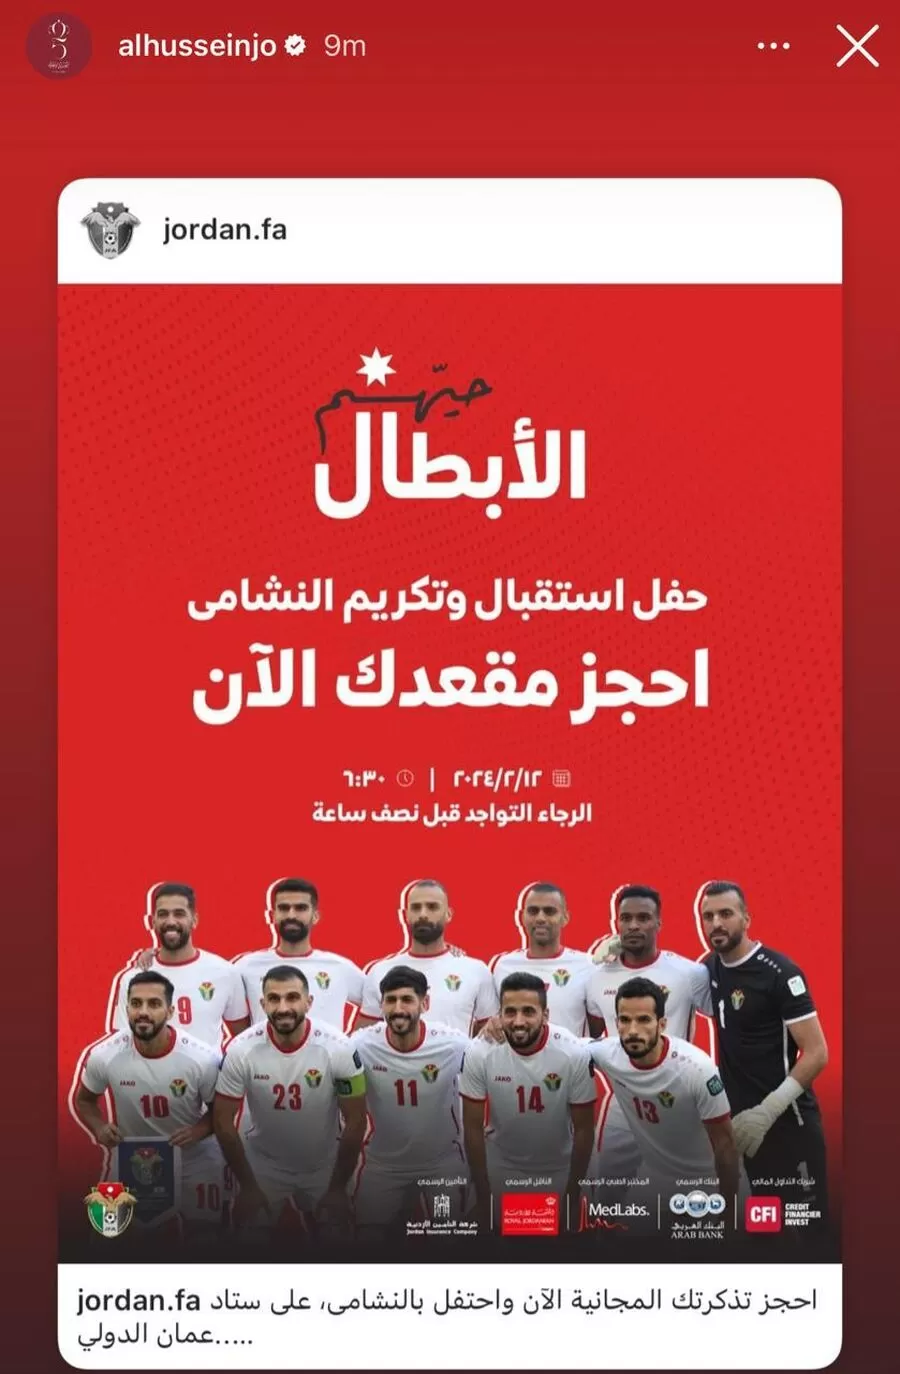 مدار الساعة,أخبار رياضية,ولي العهد,الاتحاد الأردني لكرة القدم,كأس آسيا